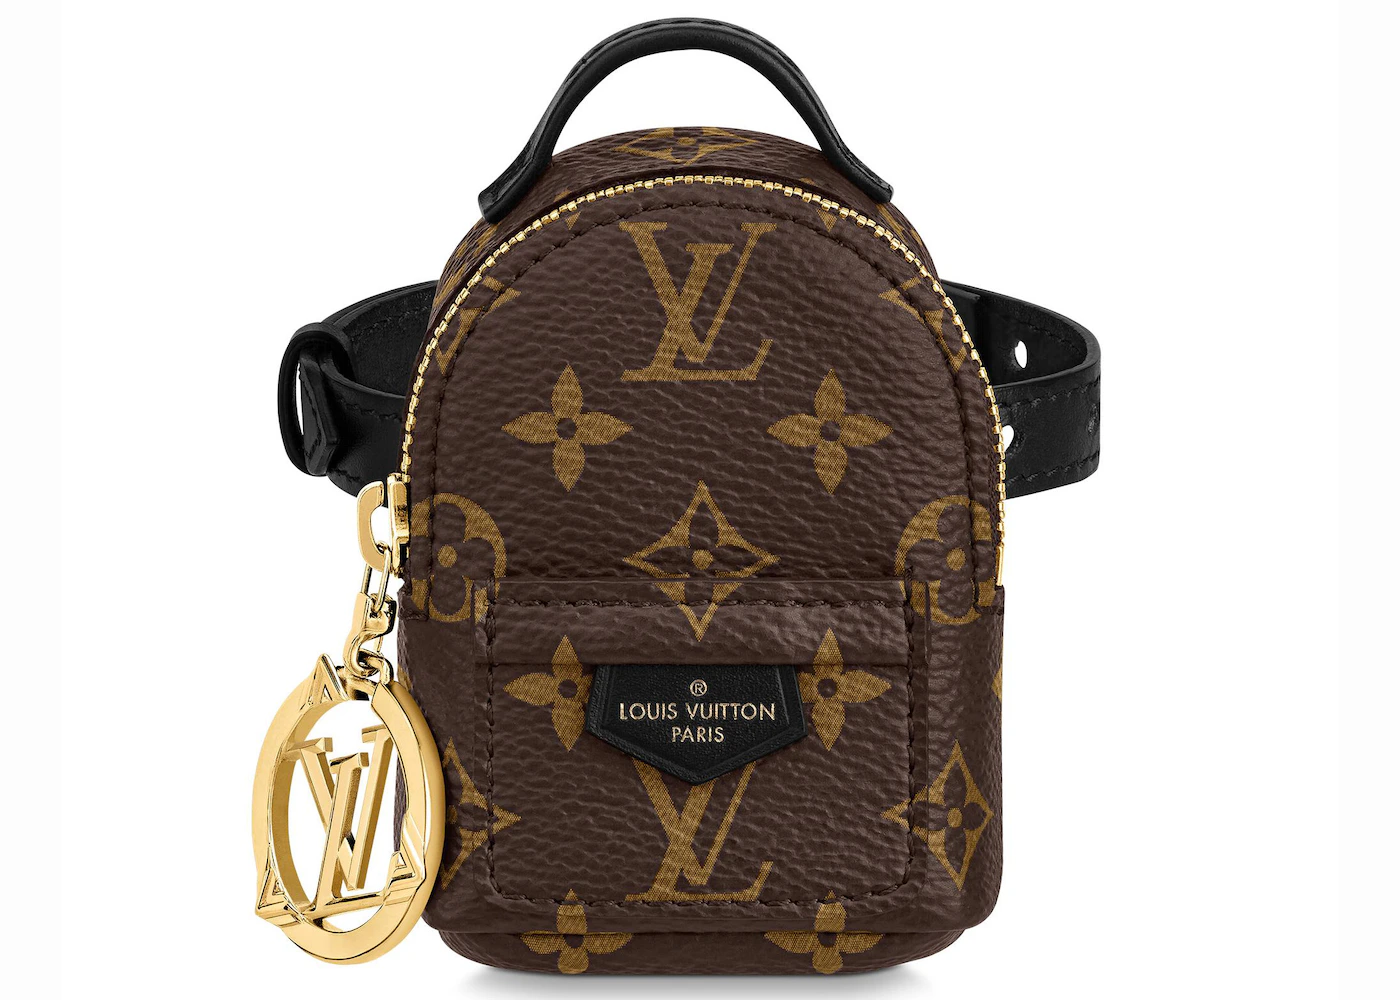 Louis Vuitton Party Bumbag Bracelet